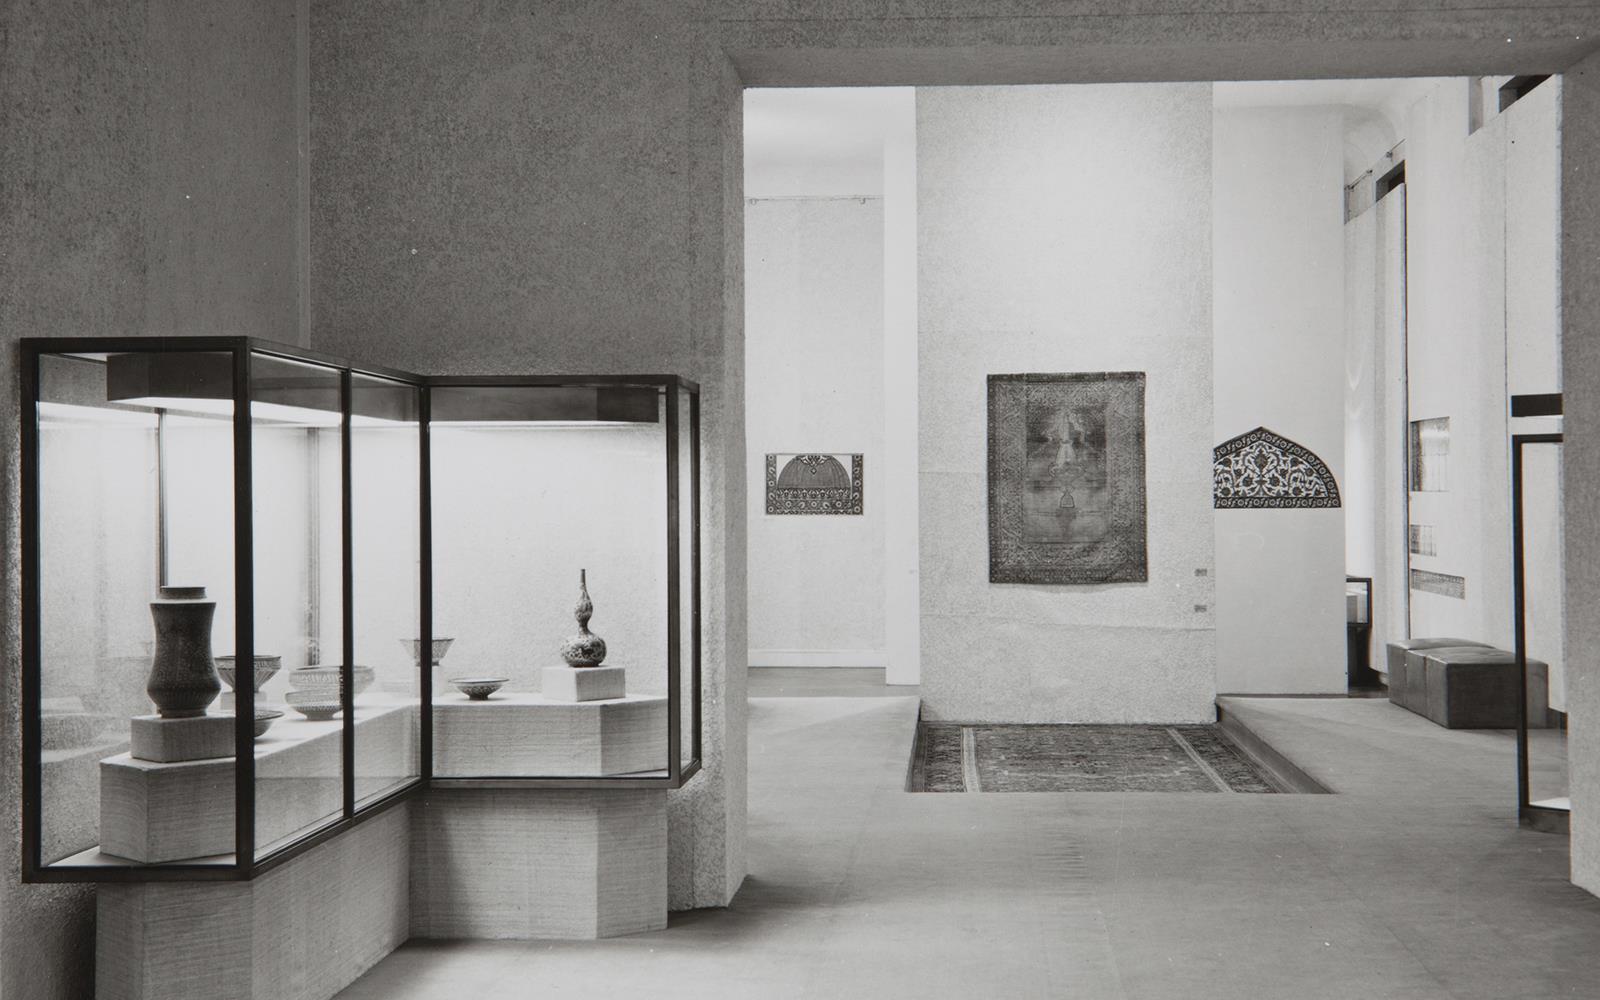 A Arte do Oriente Islâmico. Colecção da Fundação Calouste Gulbenkian